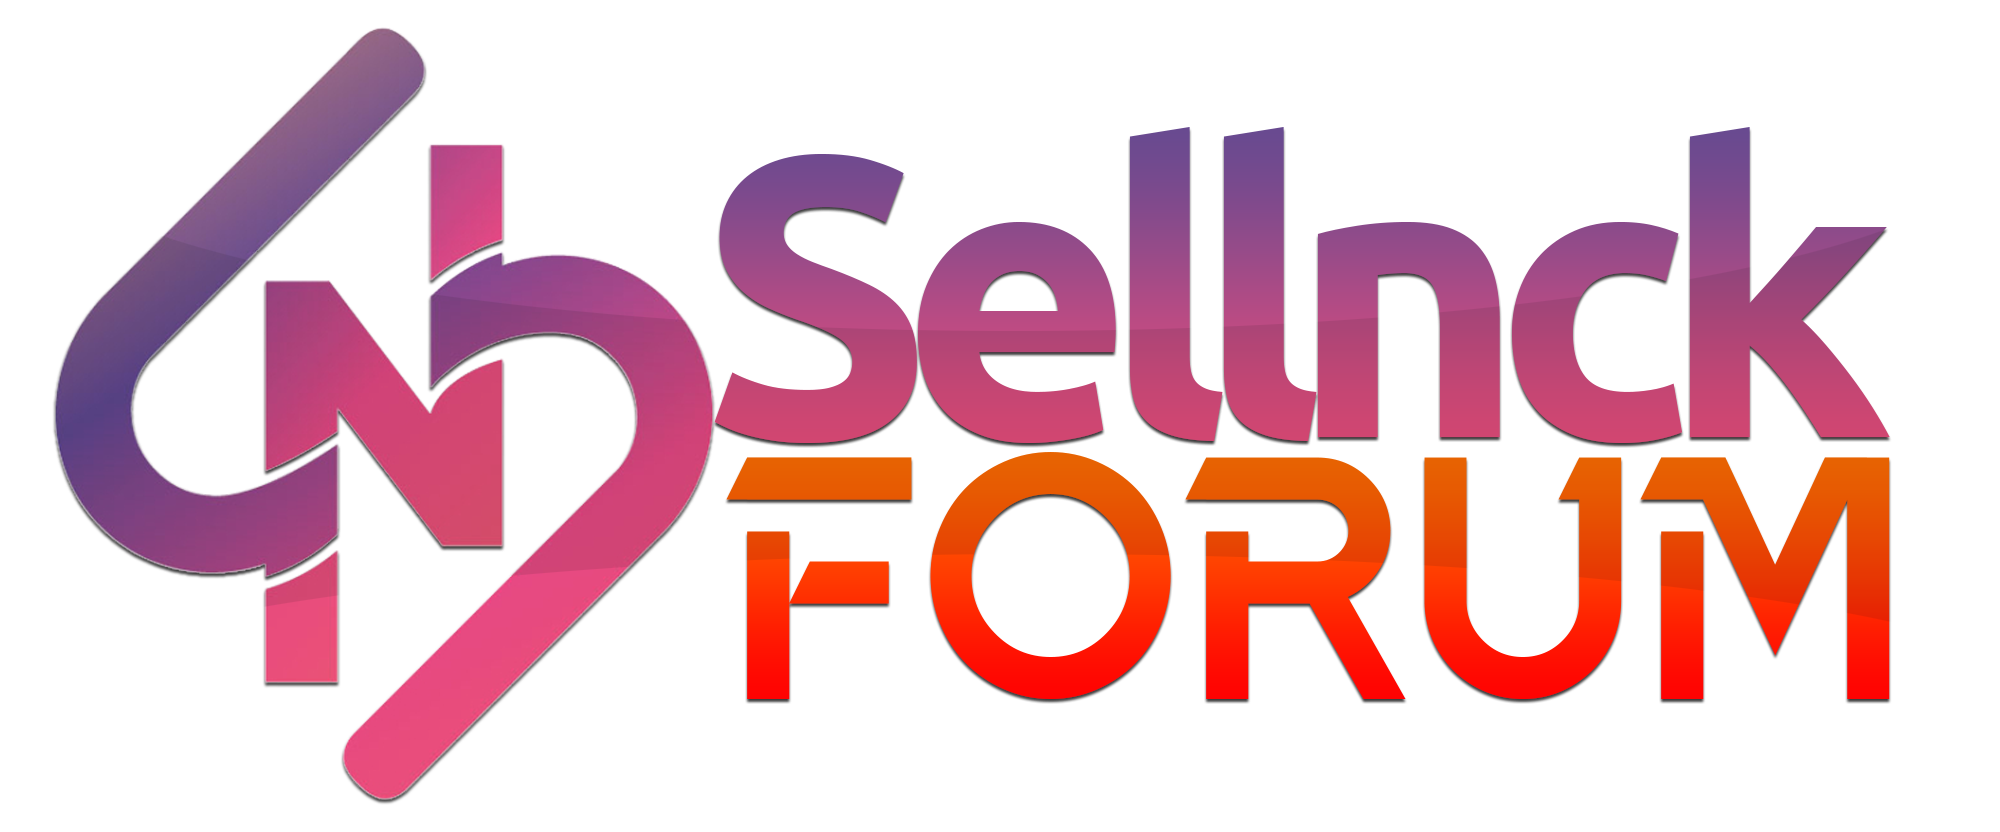 SellNCkForum.png